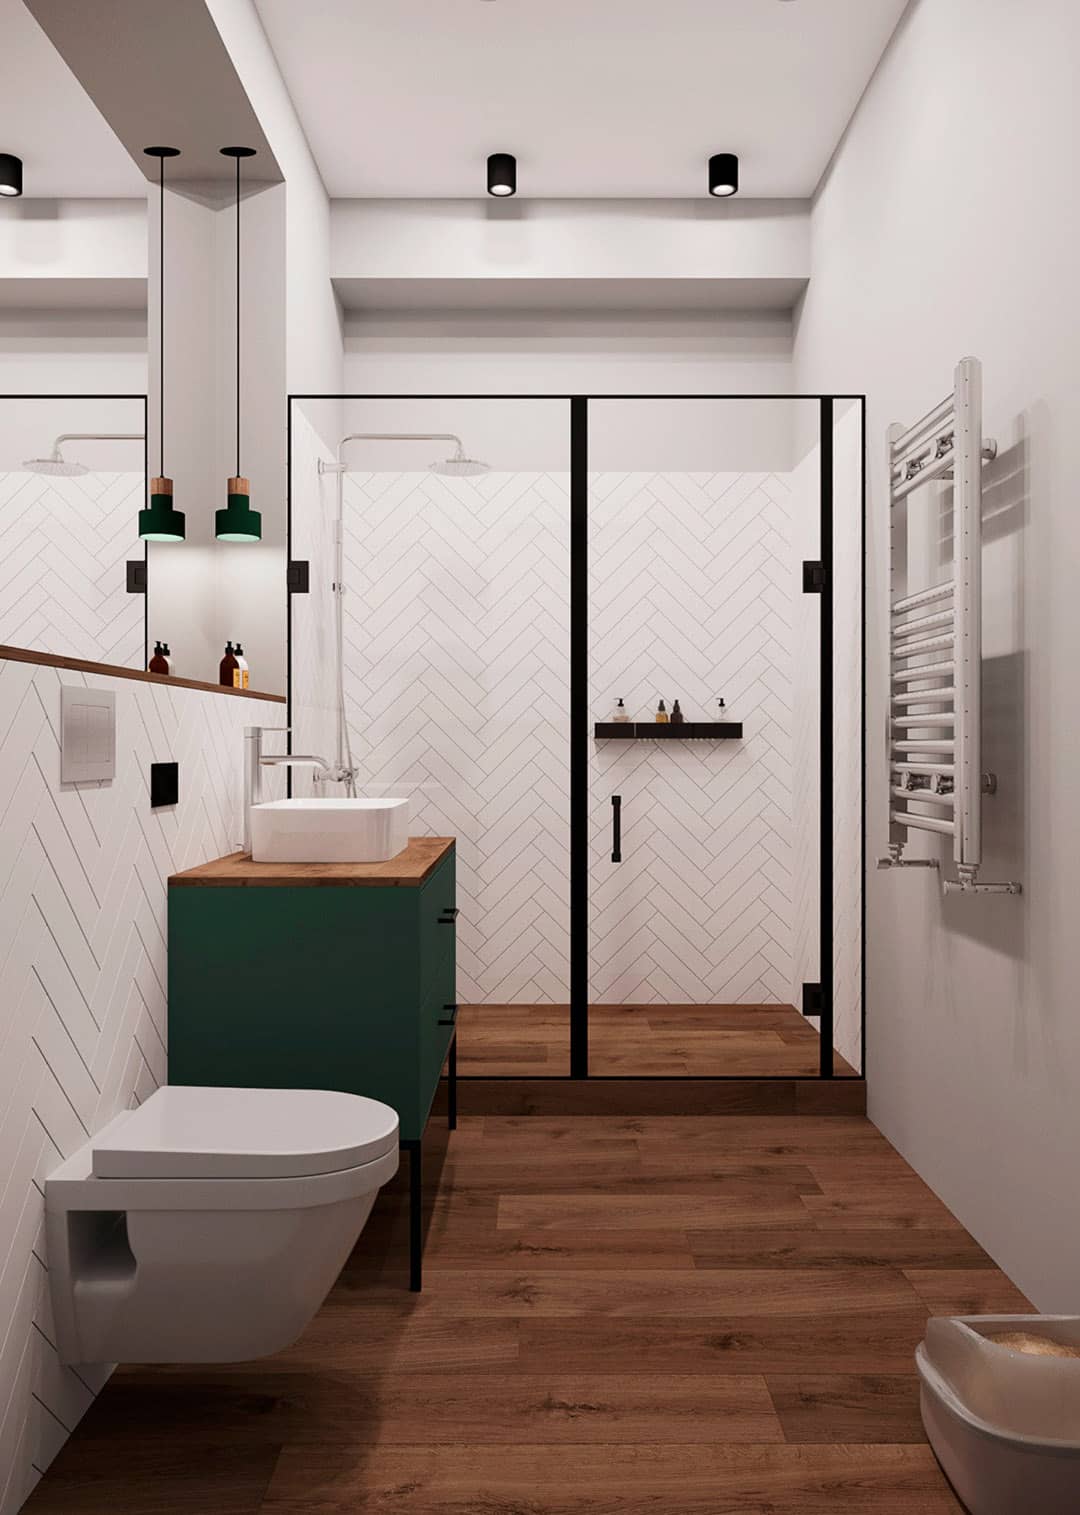 Sử dụng vách ngăn kính có thể giúp thiết kế phòng tắm nhỏ đẹp thêm thoáng